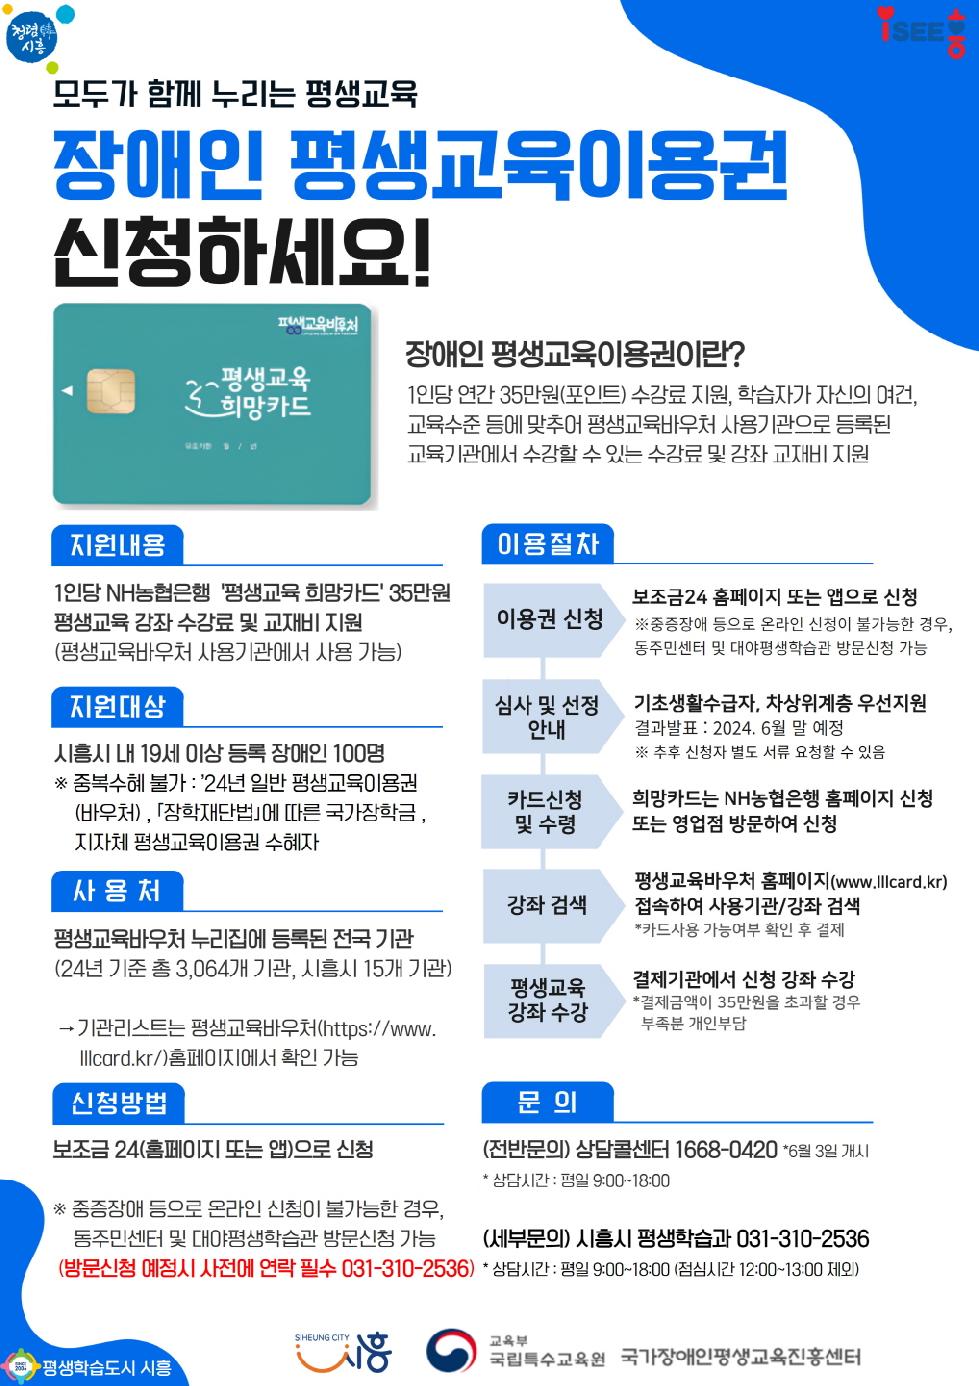 시흥시  장애인 평생교육이용권 지원사업 선정...  1인당 35만 원 지원